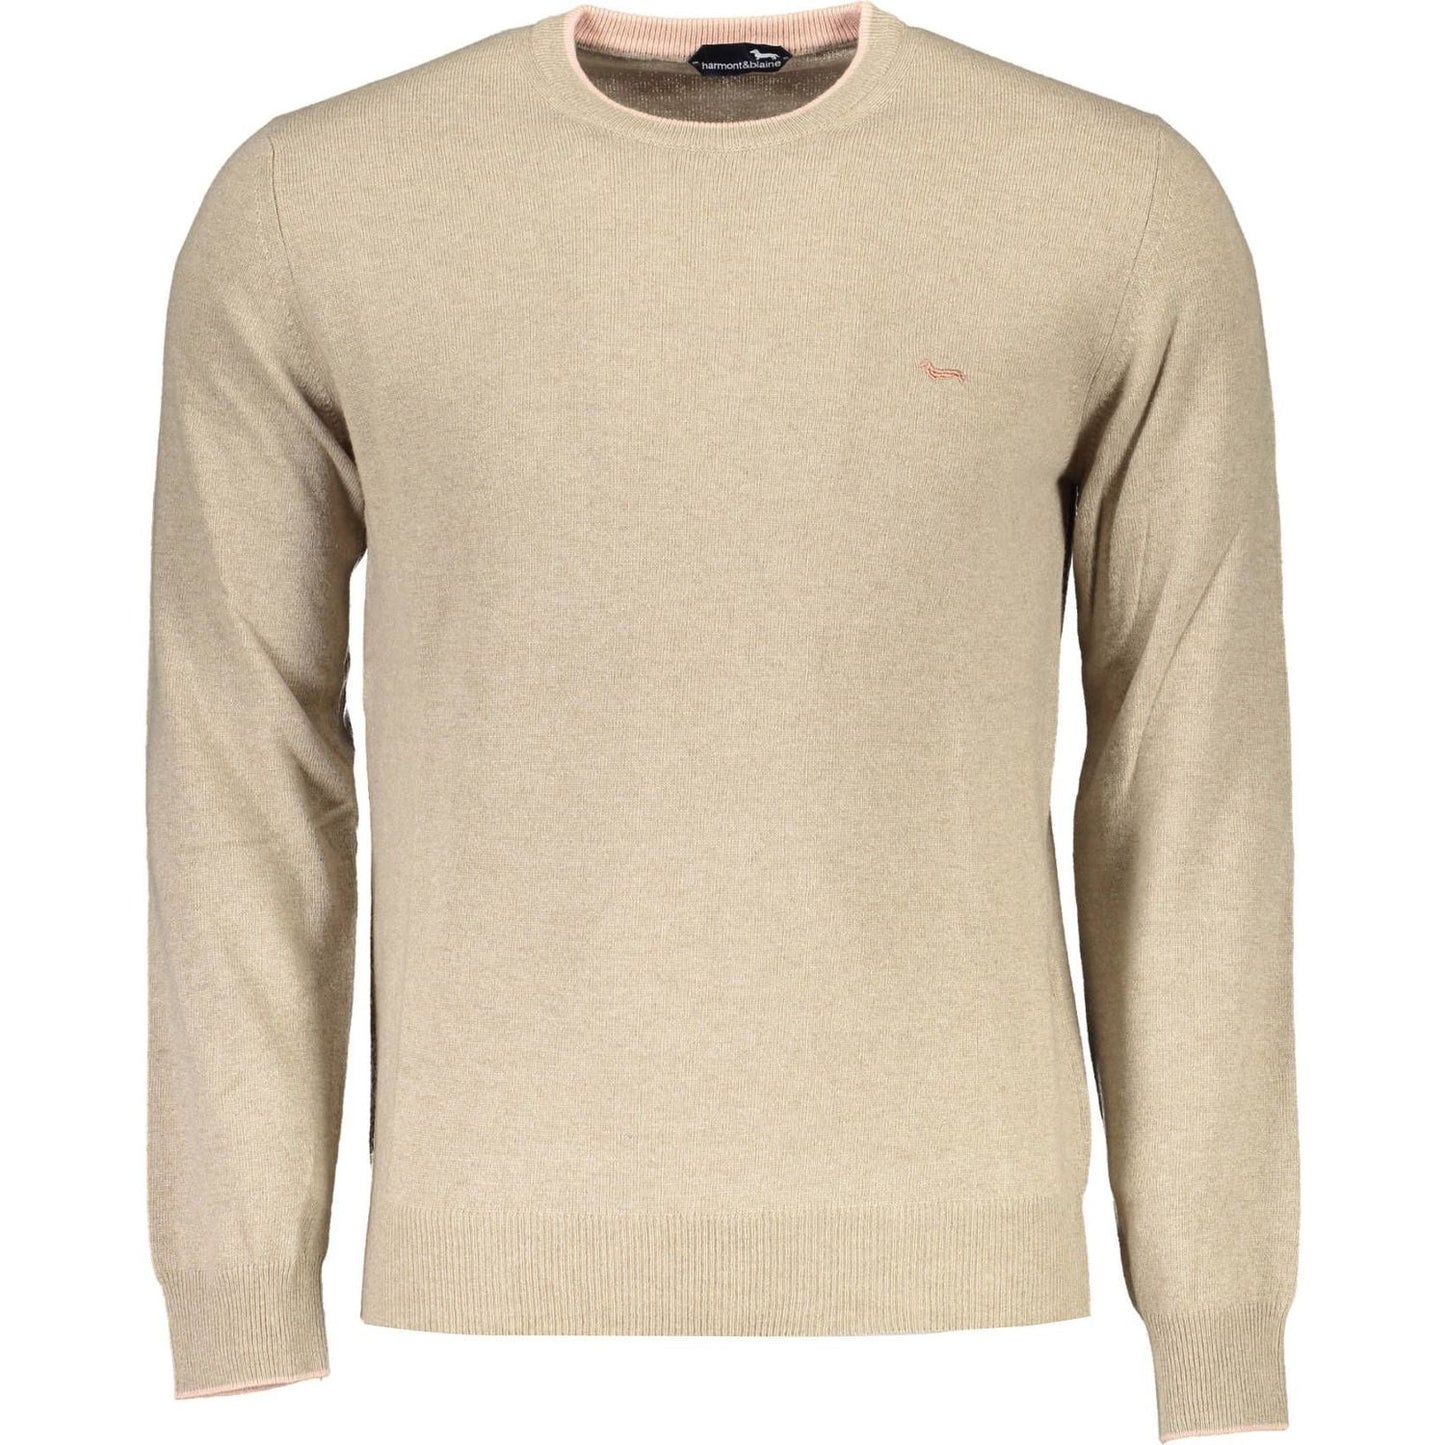 Harmont & Blaine Elegant Beige Crew Neck Sweater with Embroidery elegant-beige-crew-neck-sweater-with-embroidery-1